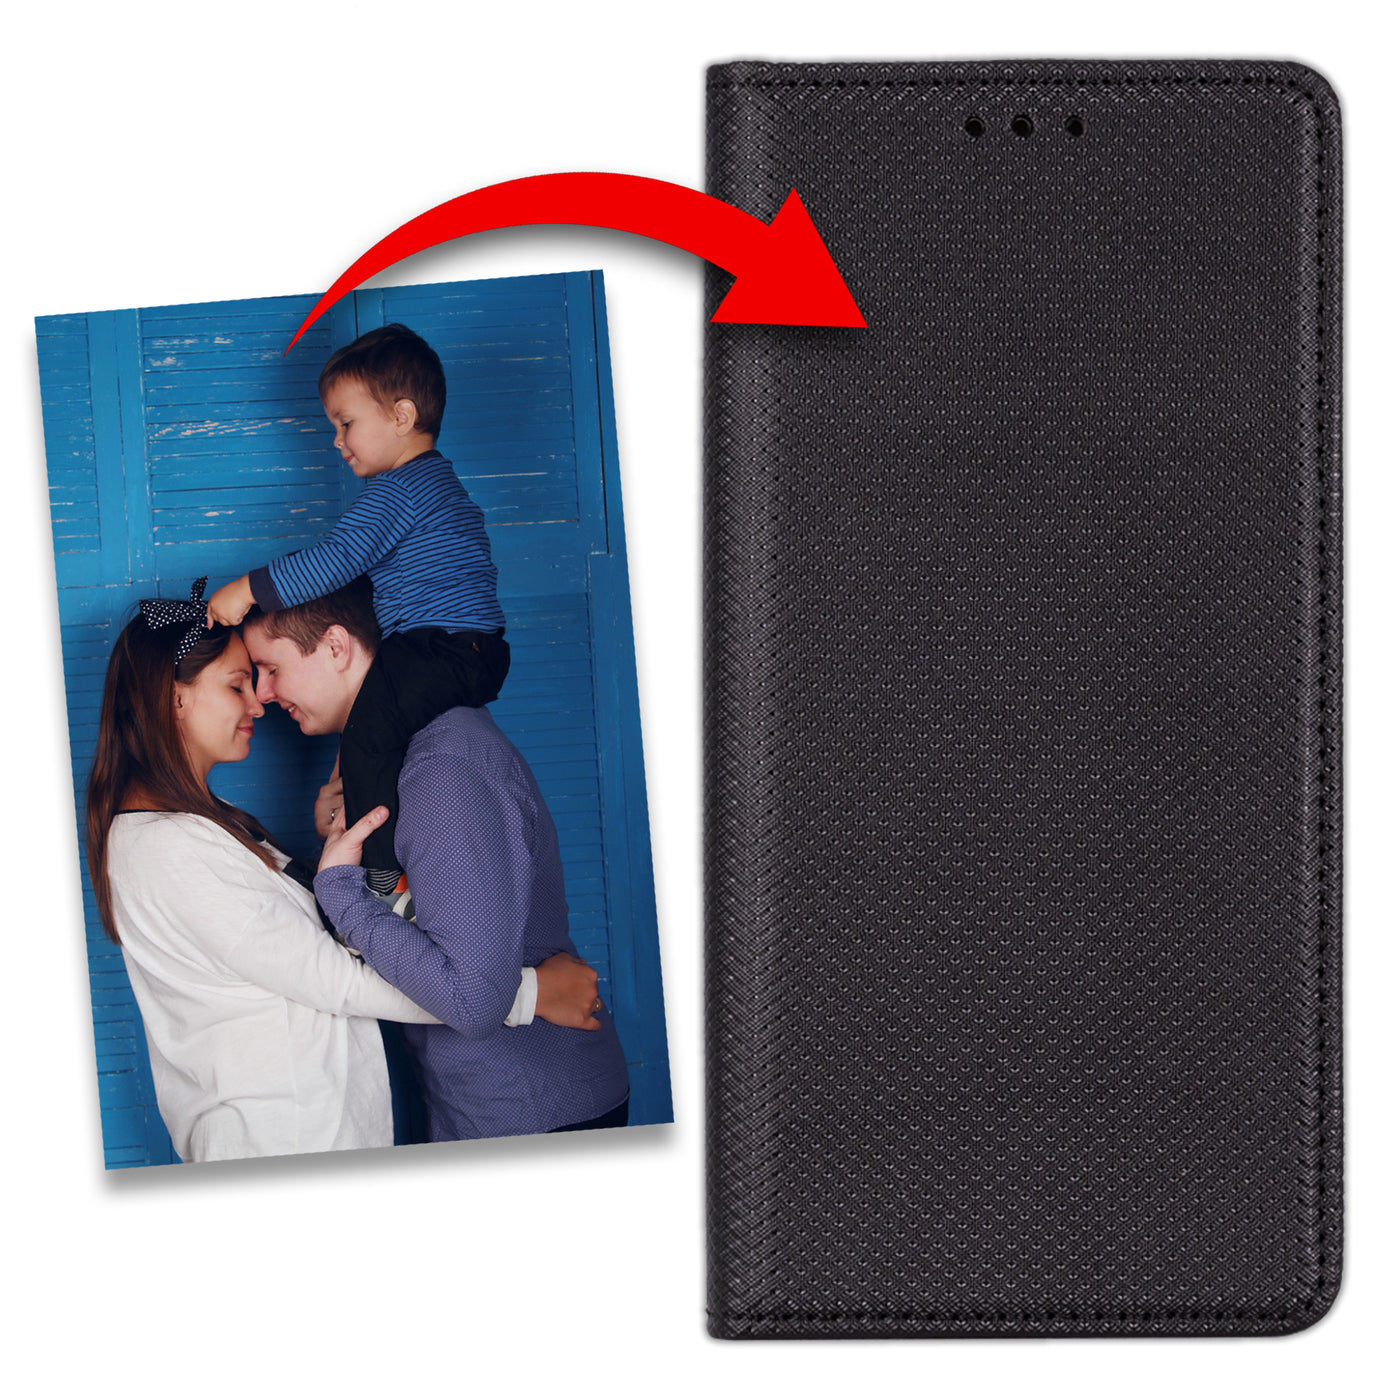 Handyhülle für Huawei P30 personalisierte Hülle mit eigenem Bild Motiv Design Smart Magnet Klapphülle